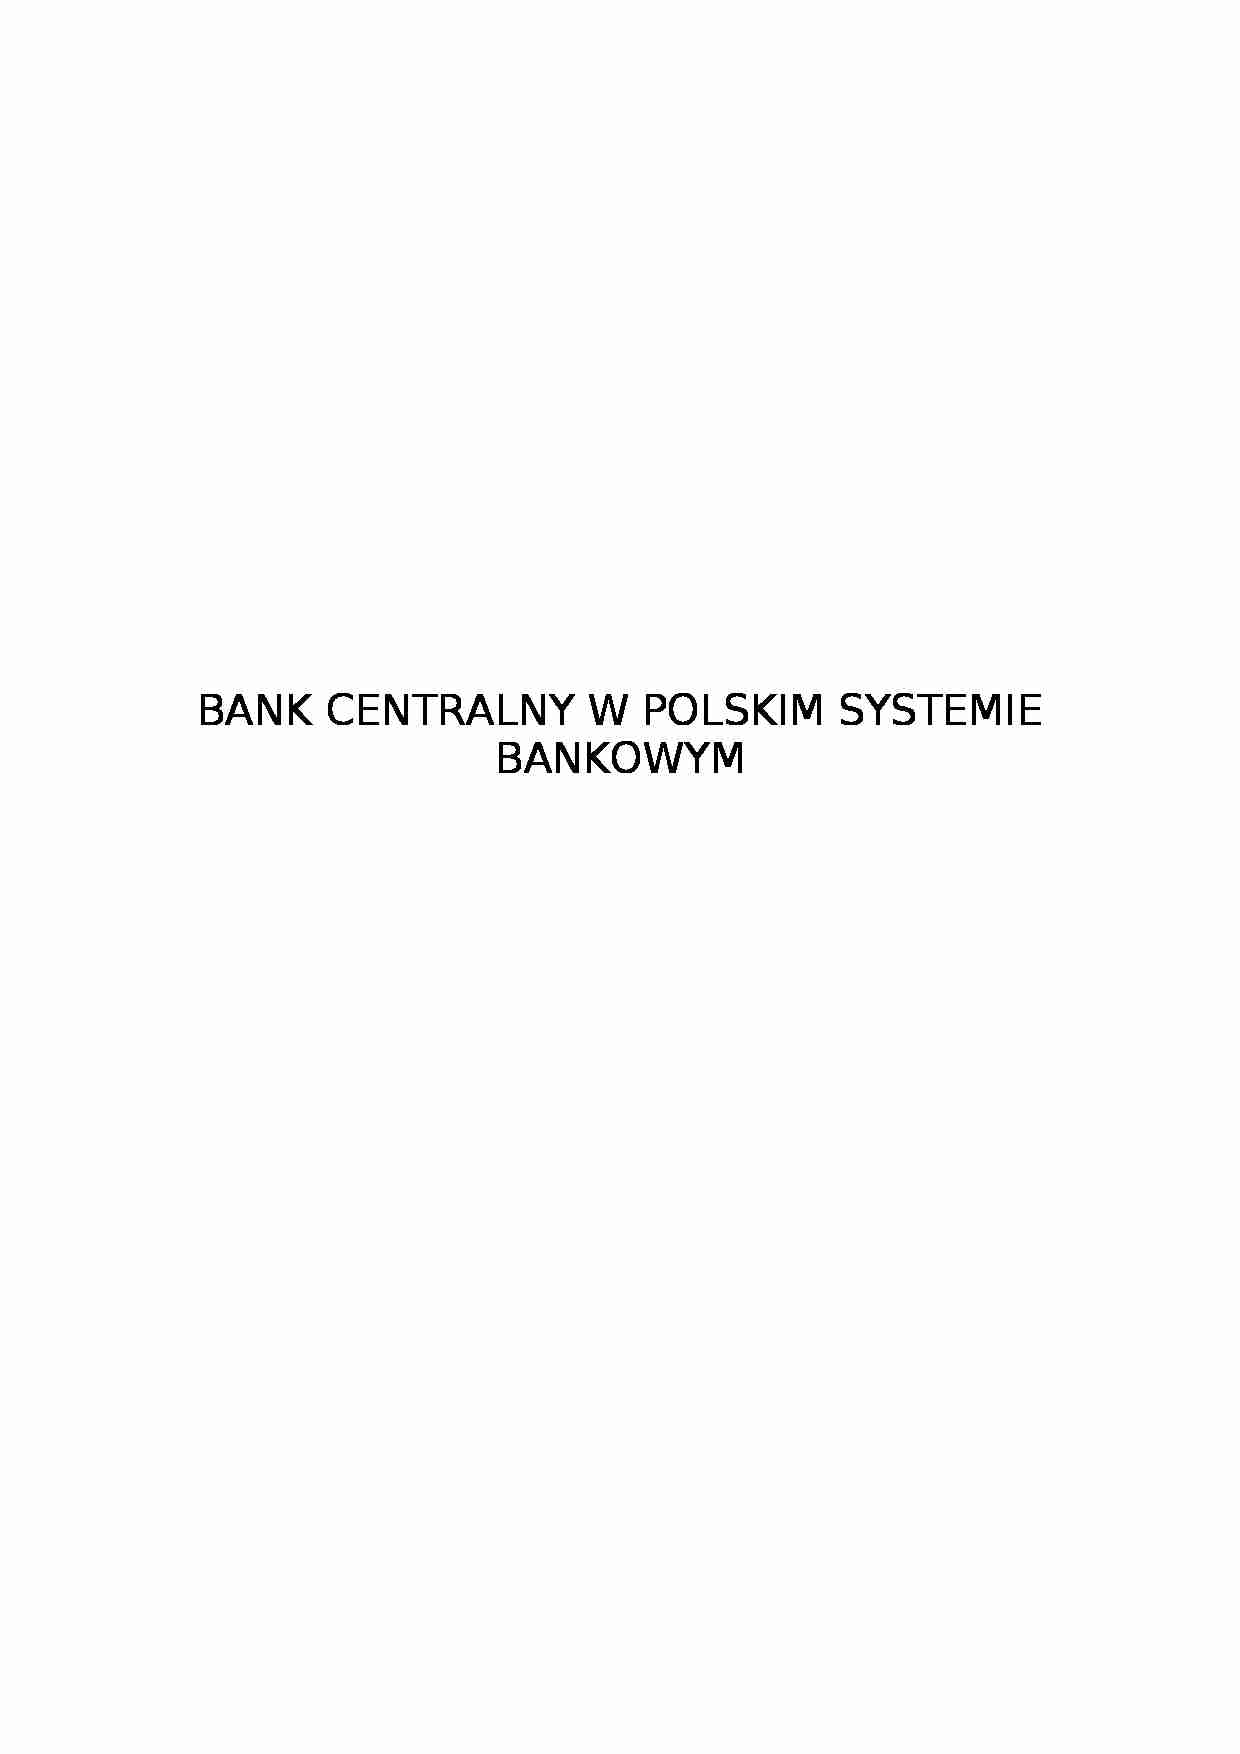 Bank centralny w polskim systemie bankowym - strona 1